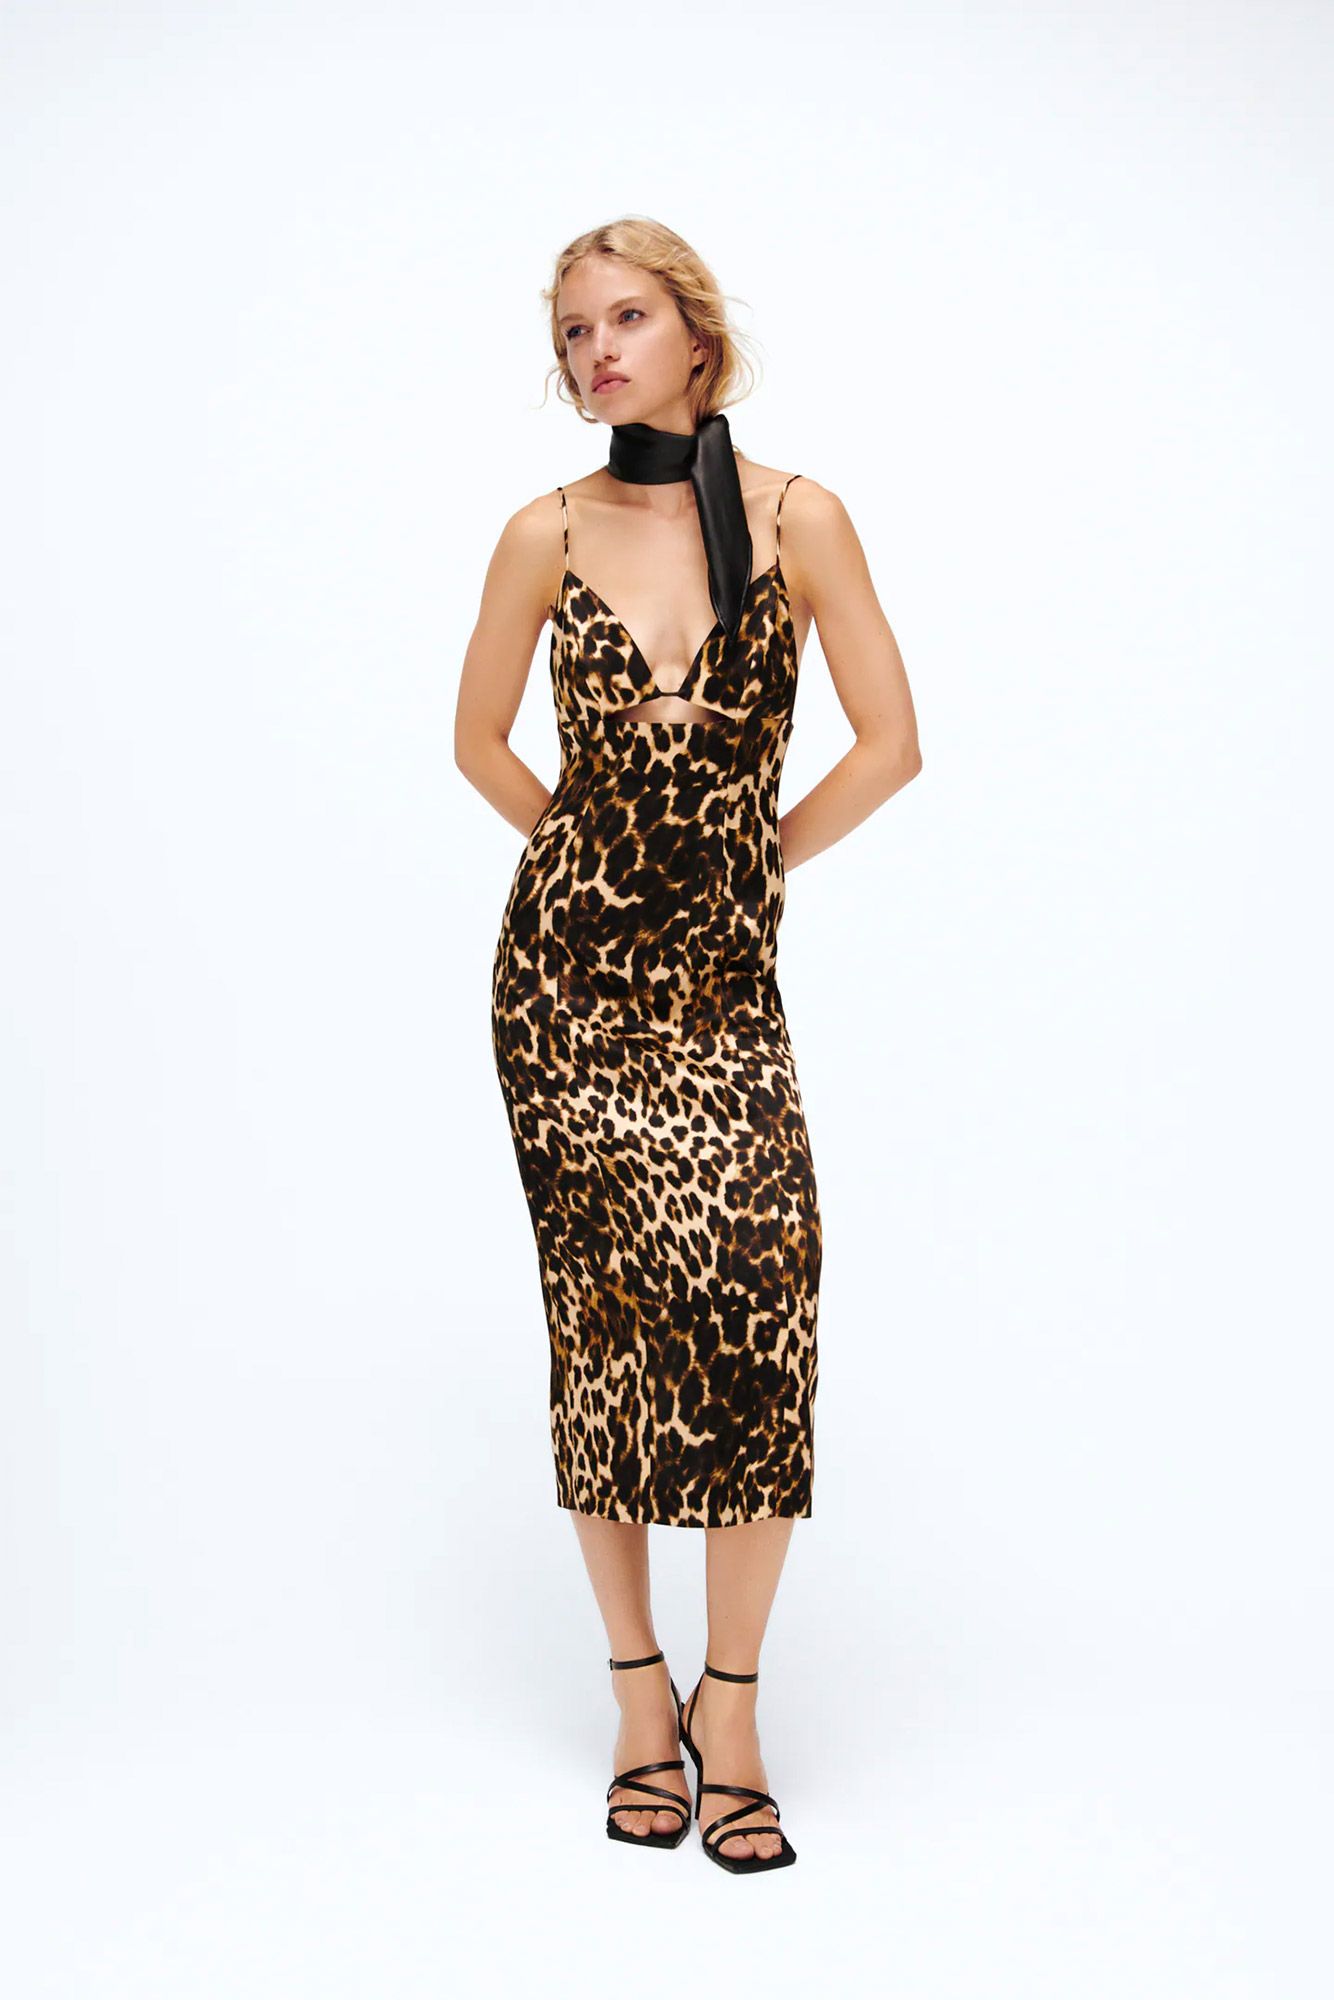 Todo el de Zara ha reservado vestido de leopardo